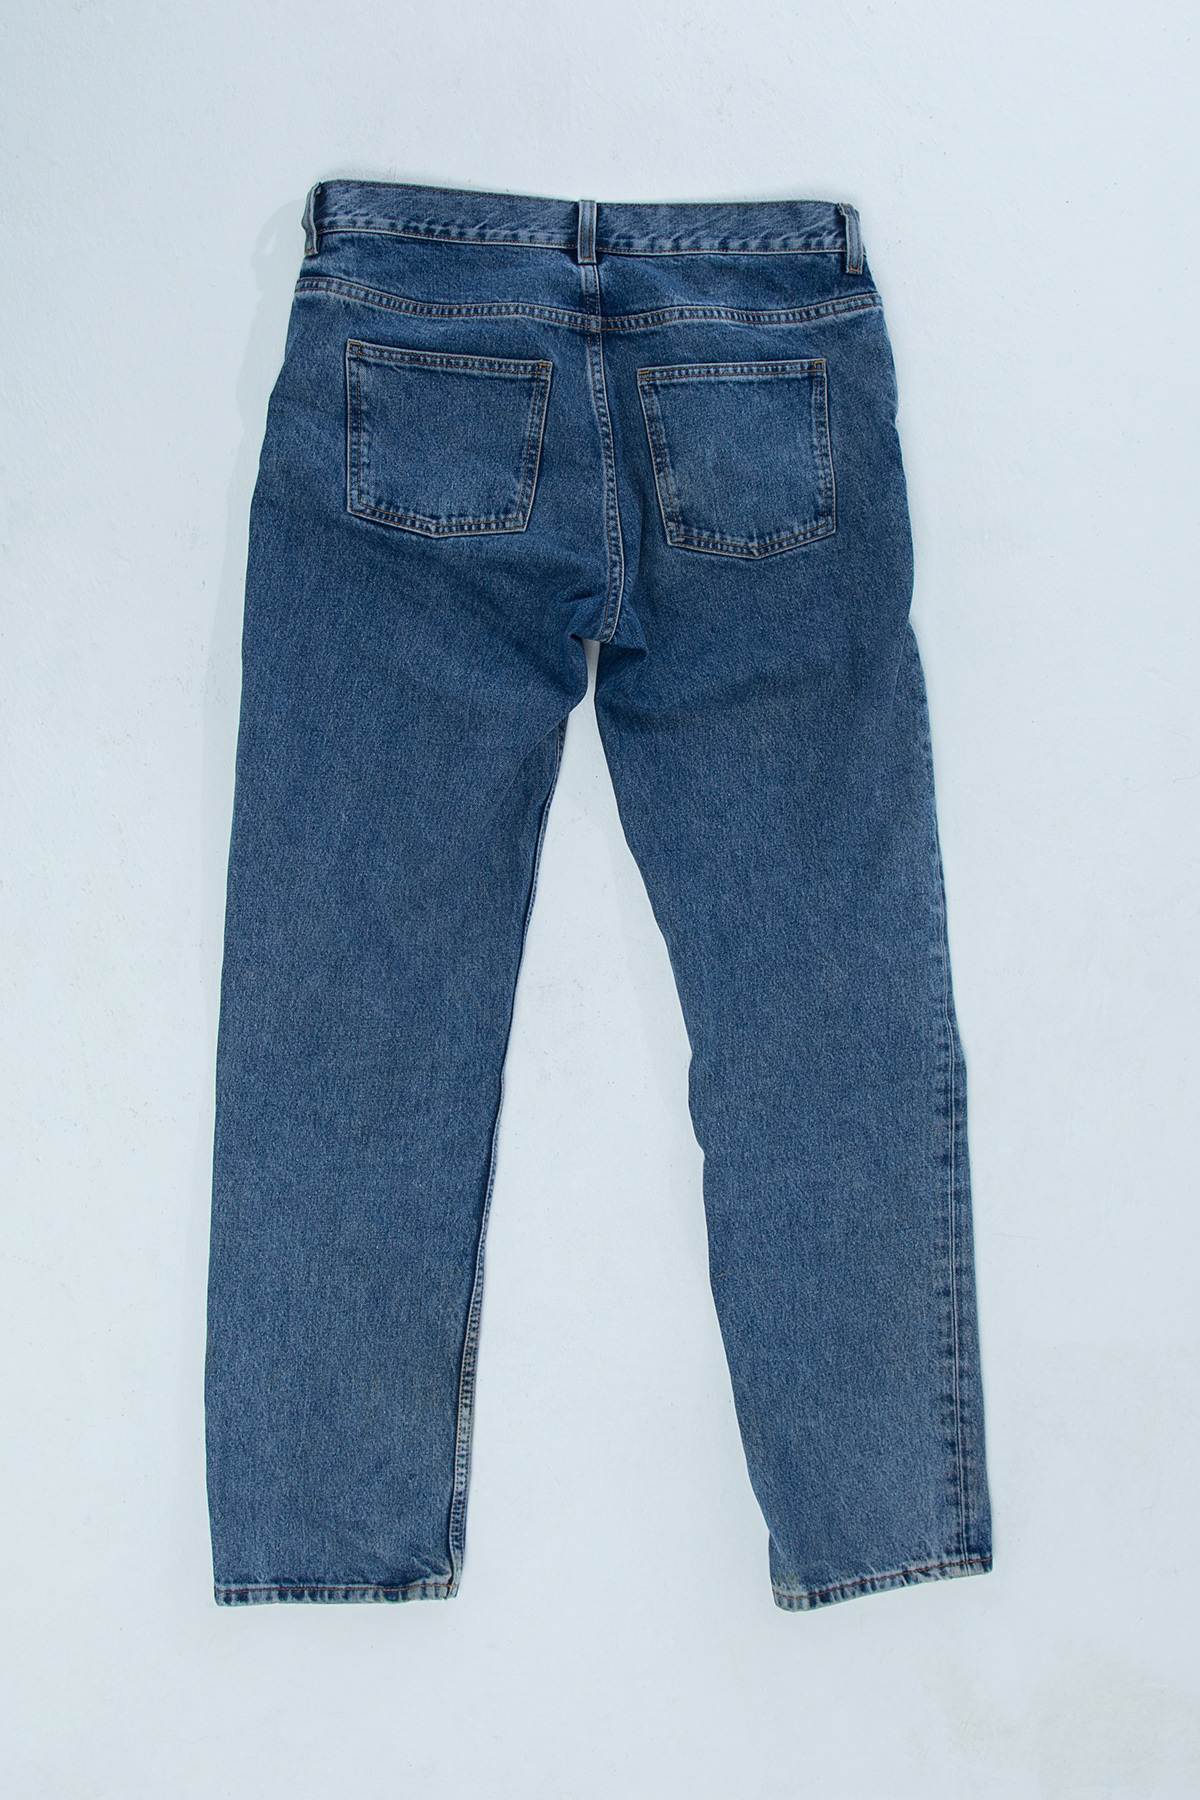 Diesel Fashion  item jeans lingerie